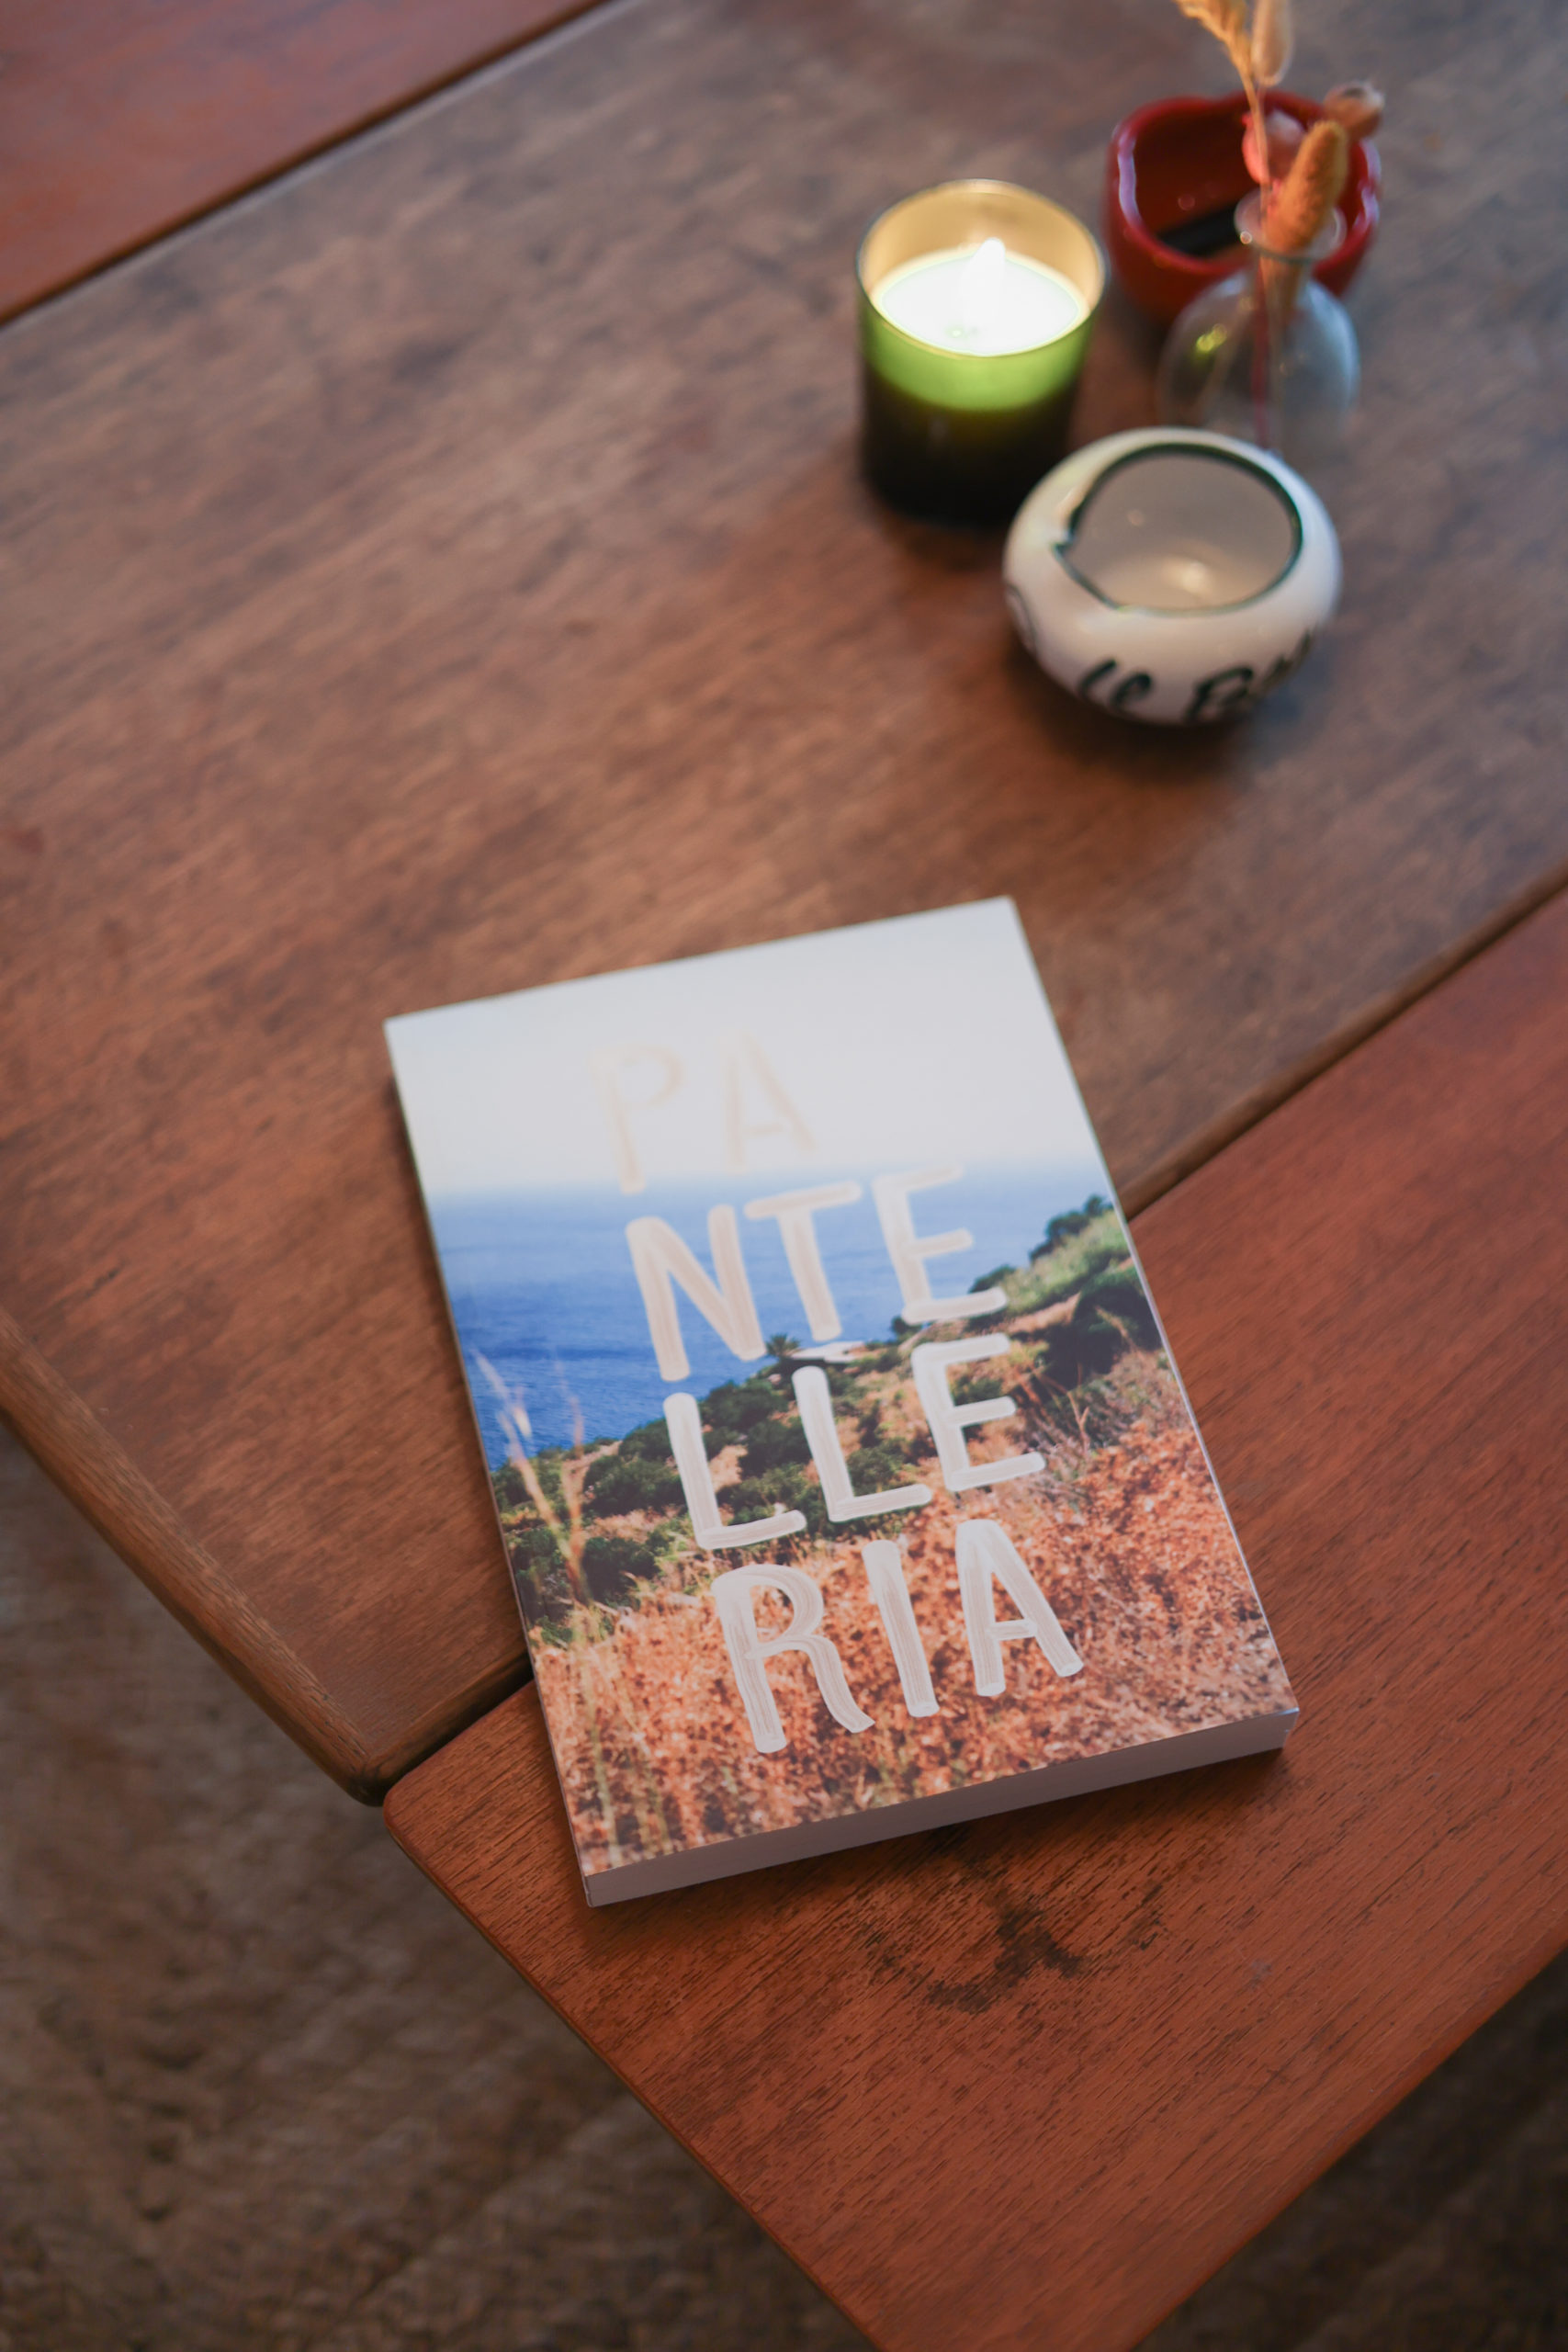 Photographie du livre Pantelleria de Bastien Lattanzio posé sur une table